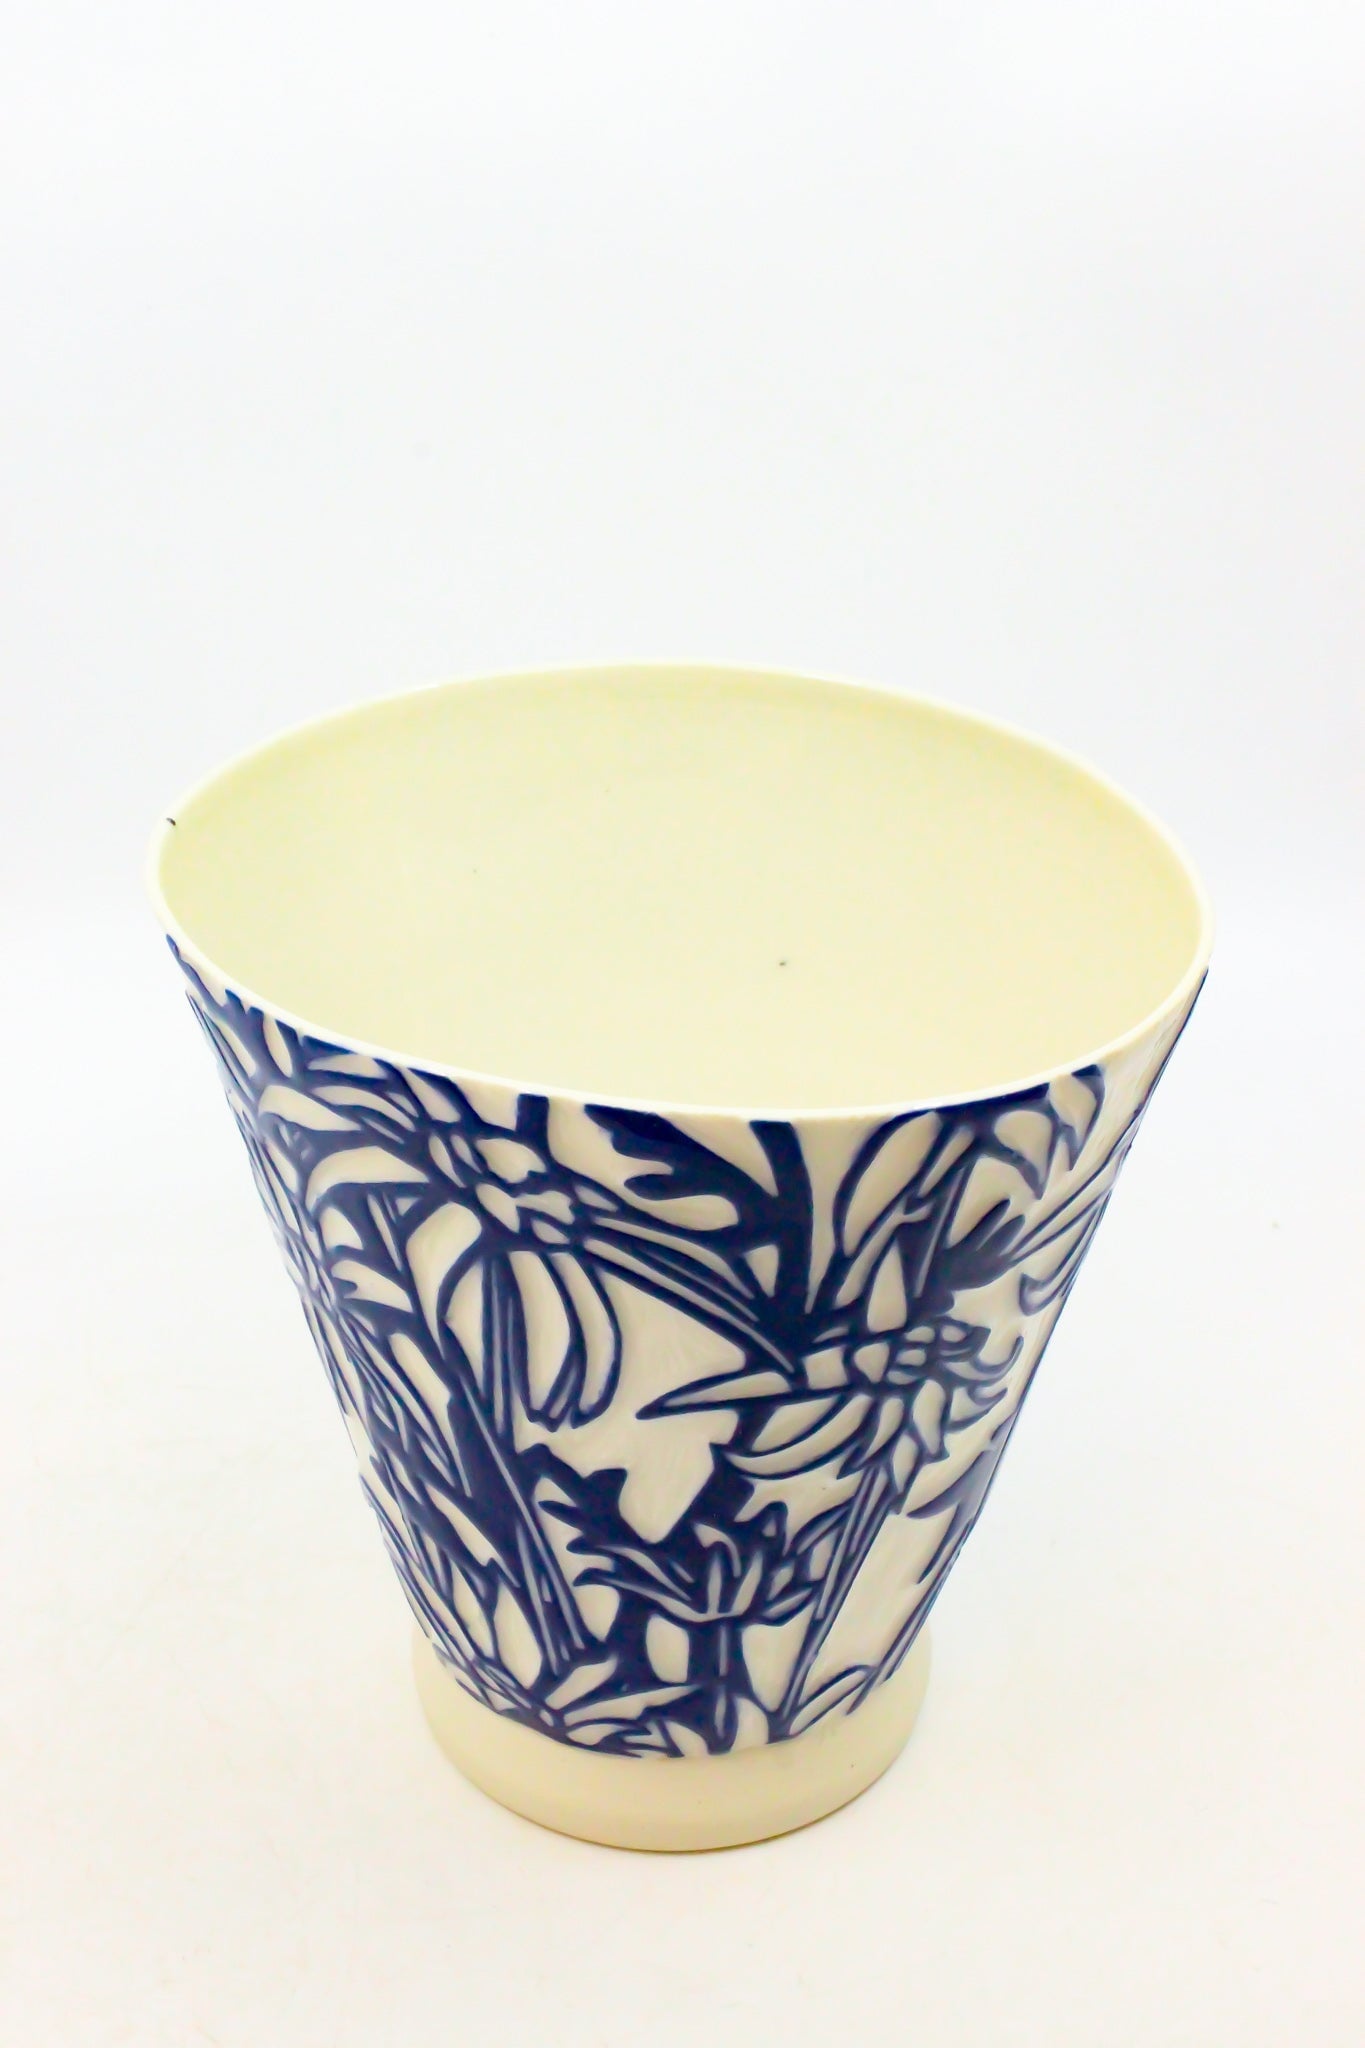 Vase €“ Mixed Botanical - Medium 